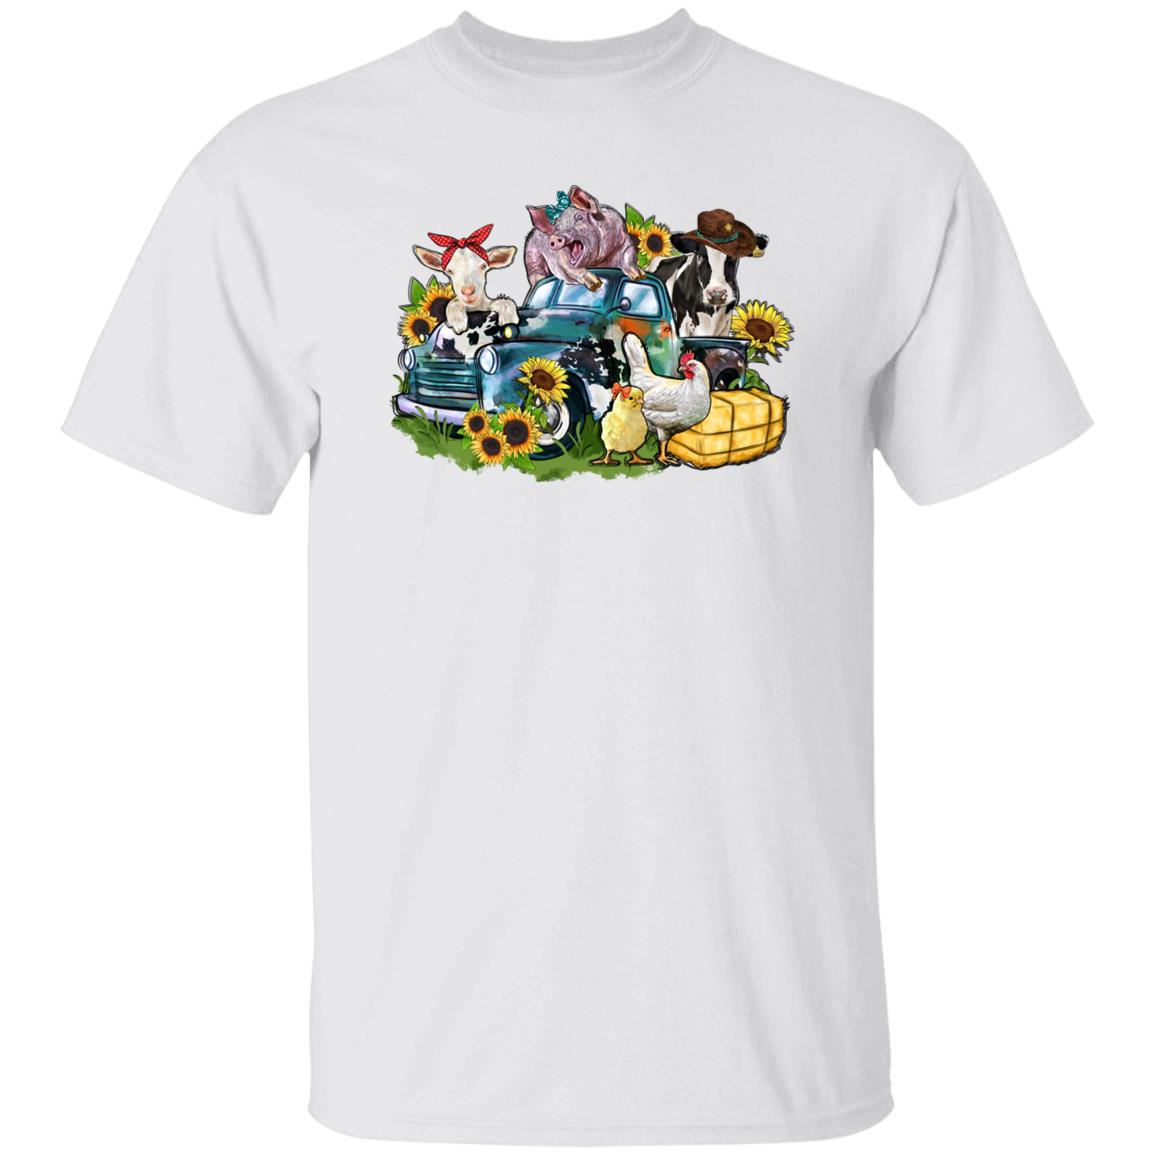 Farm animals truck T-Shirt gift Sunflower cow gig chick goat Farmer Unisex tee Sand White Sport Grey-Family-Gift-Planet